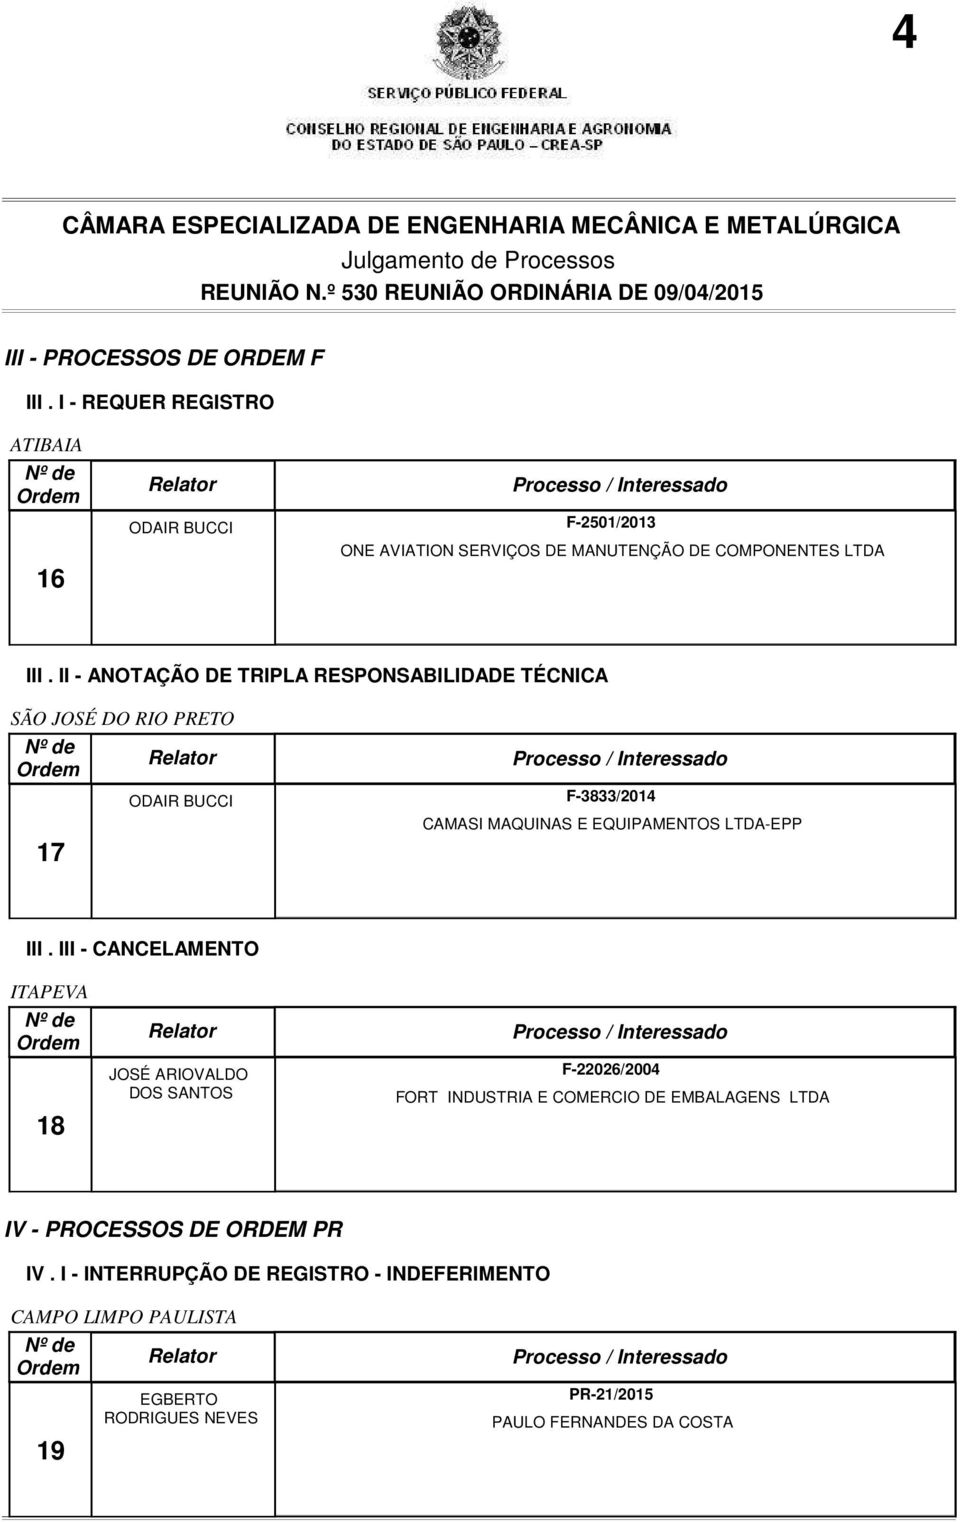 II - ANOTAÇÃO DE TRIPLA RESPONSABILIDADE TÉCNICA SÃO JOSÉ DO RIO PRETO 17 ODAIR BUCCI F-3833/2014 CAMASI MAQUINAS E EQUIPAMENTOS